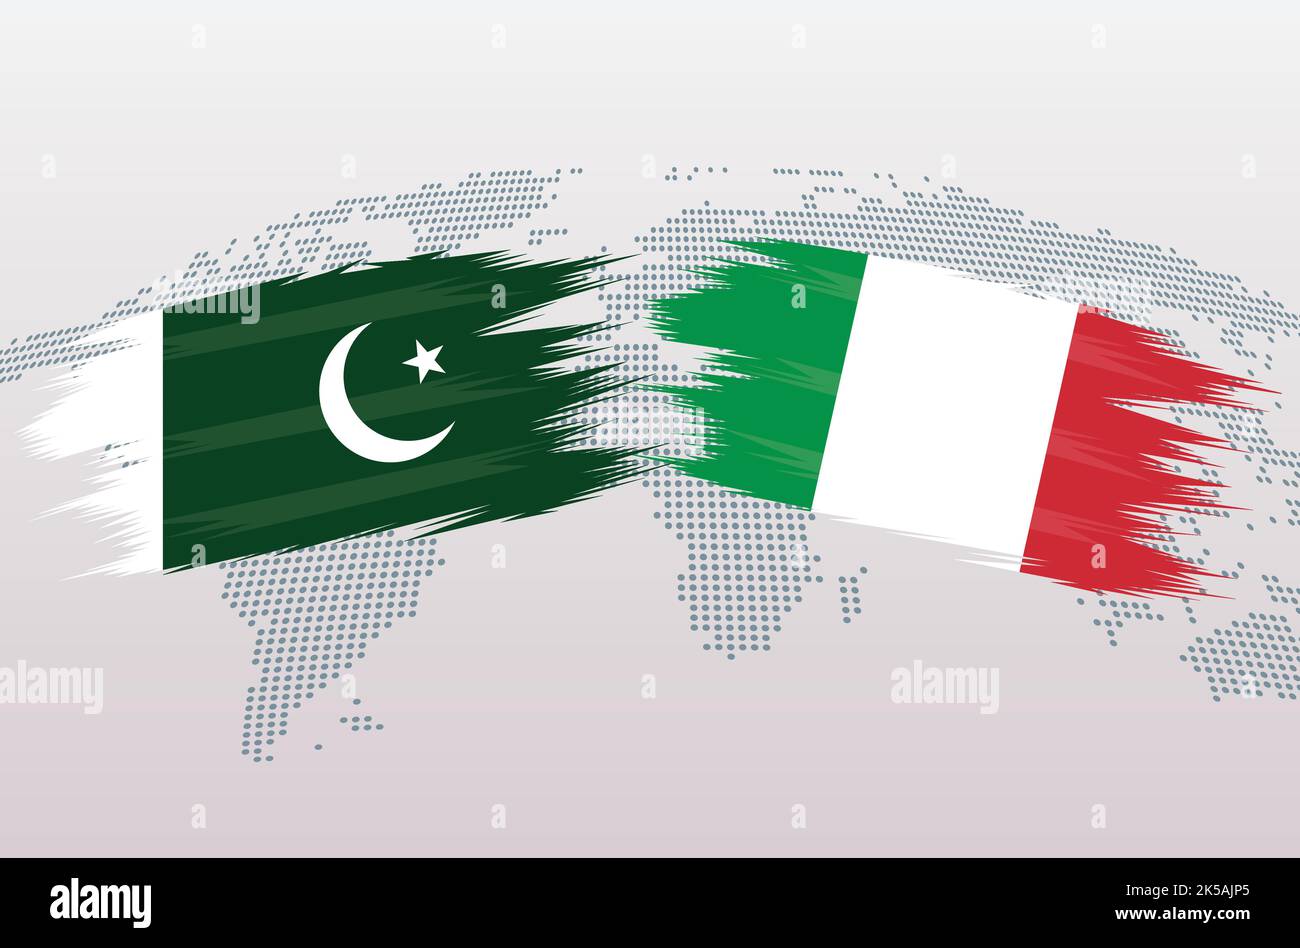 Bandiere Pakistan vs Italia. Repubblica Islamica del Pakistan contro bandiere italiane, isolata su sfondo grigio della mappa del mondo. Illustrazione vettoriale. Illustrazione Vettoriale